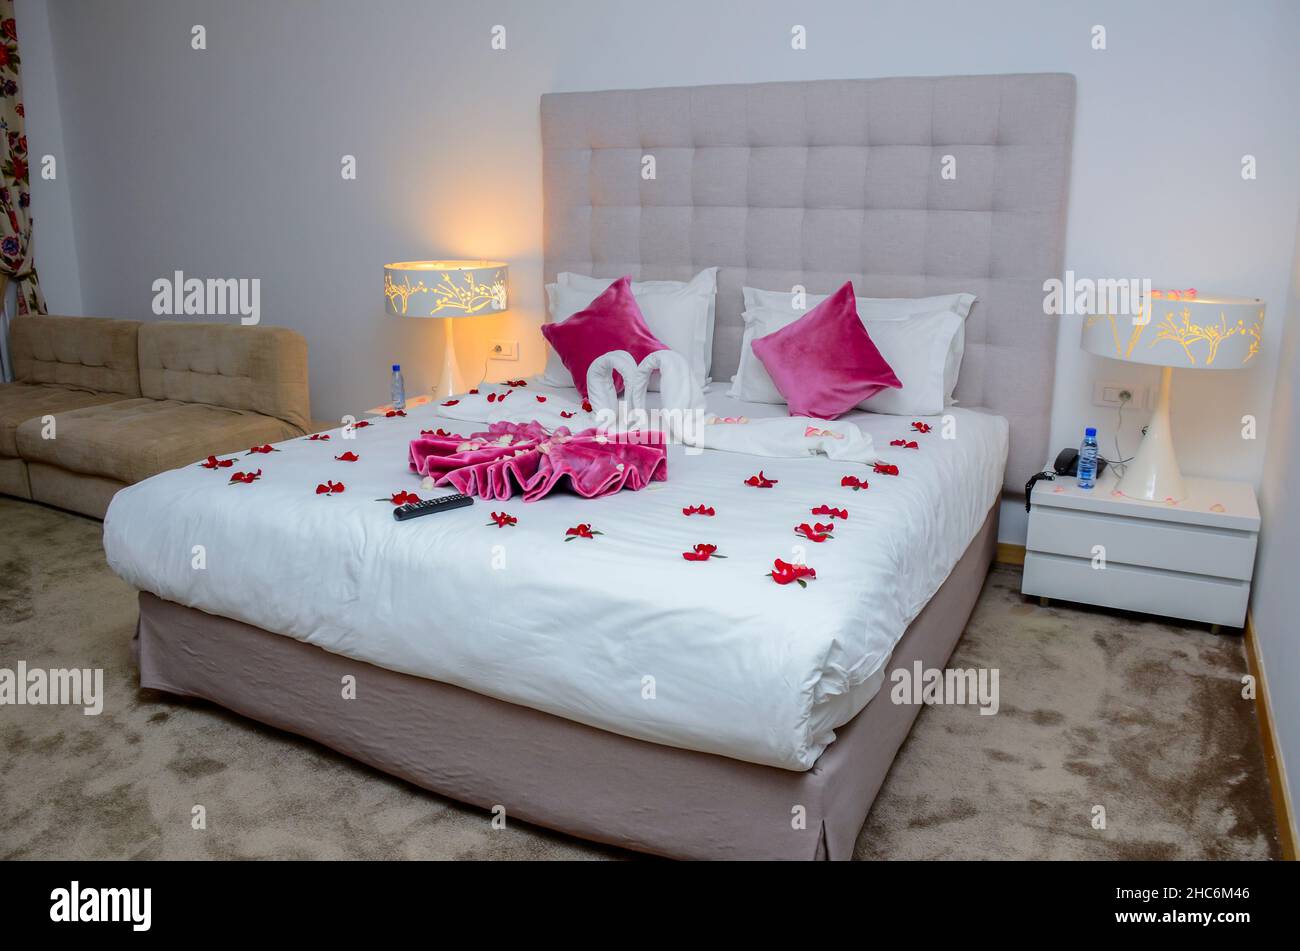 Petali di rose sul letto immagini e fotografie stock ad alta risoluzione -  Alamy